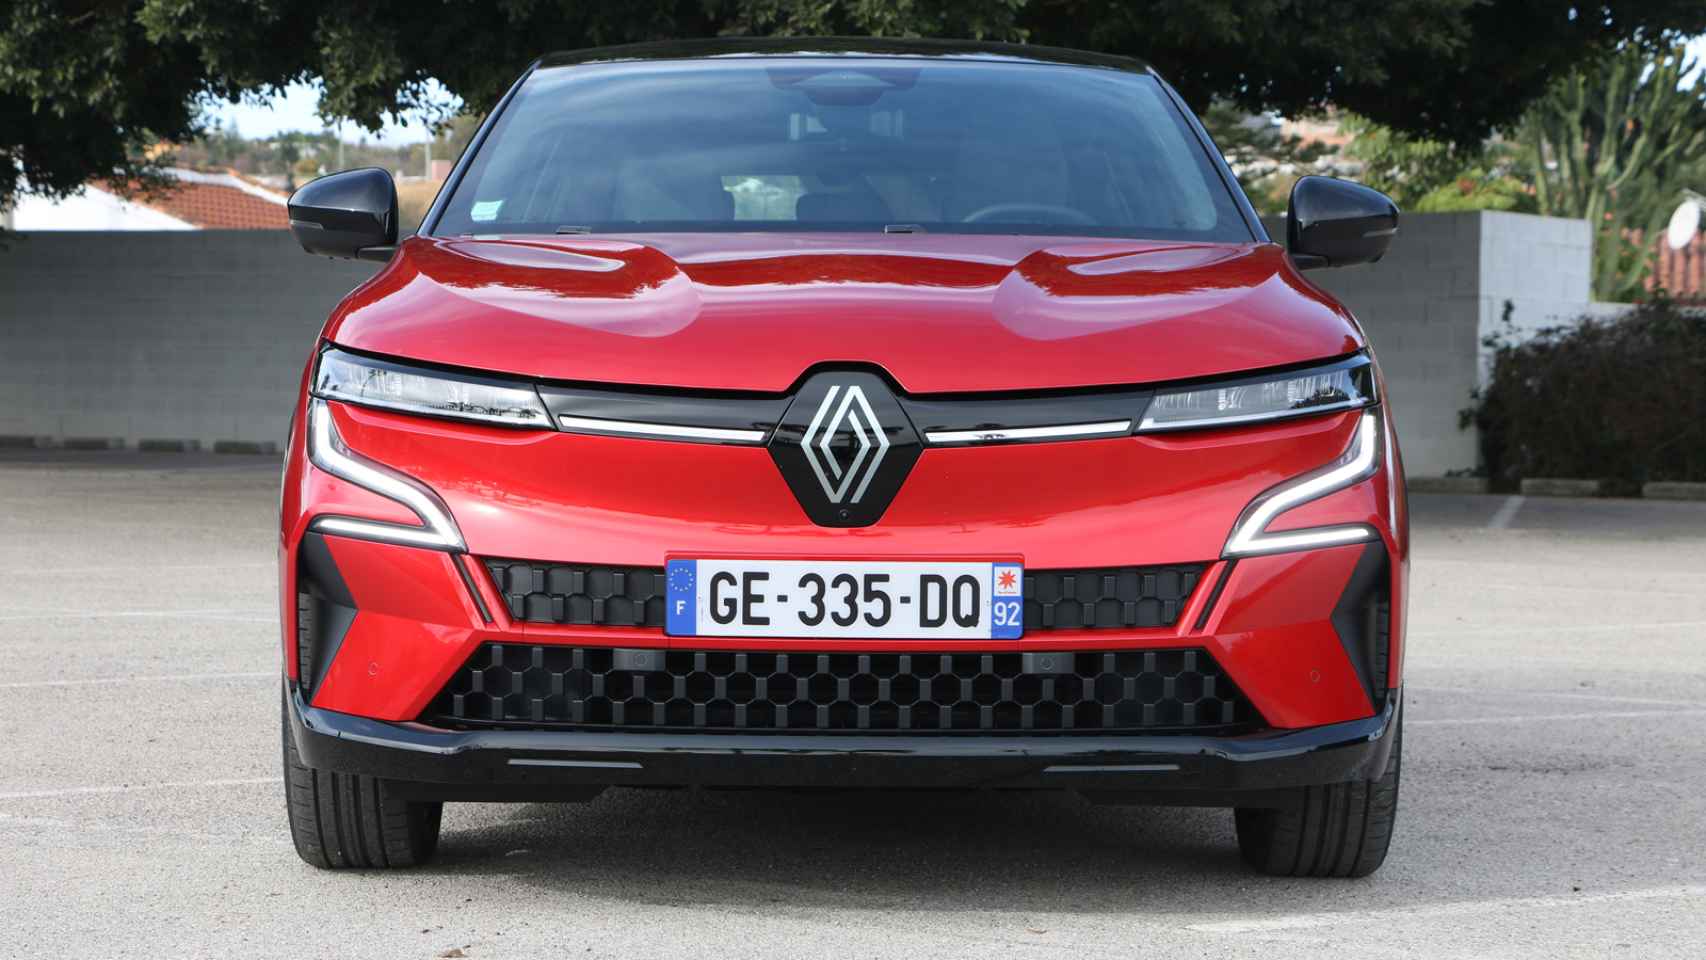 Galería de fotos del nuevo Renault Mégane eléctrico de 2022